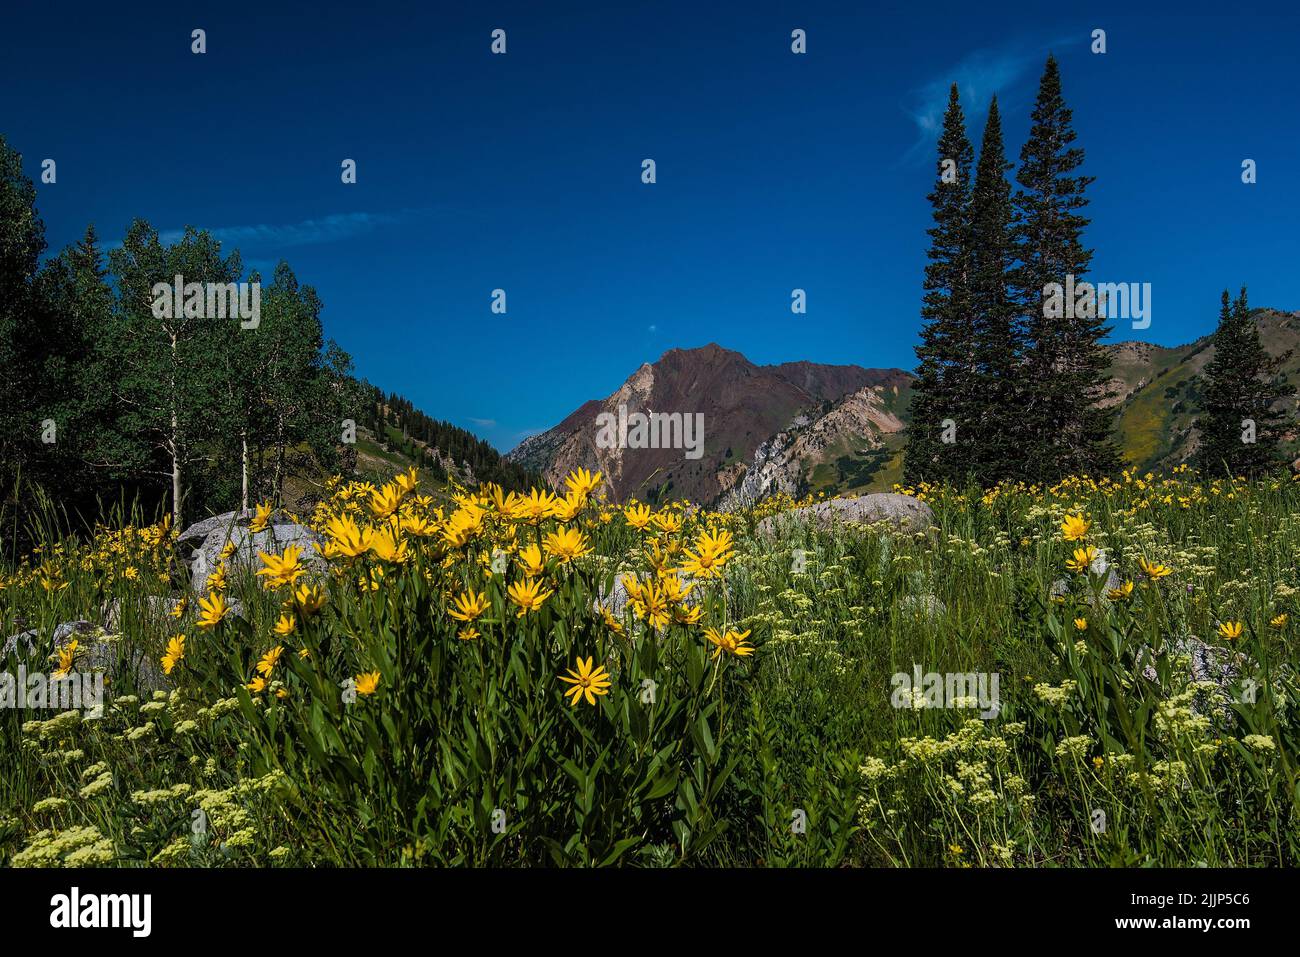 Balsamo giallo radice fiori in un prato. Il bacino di Albion nello Utah è famoso in tutto il mondo per la sua esposizione di fiori selvatici a metà estate. Foto Stock